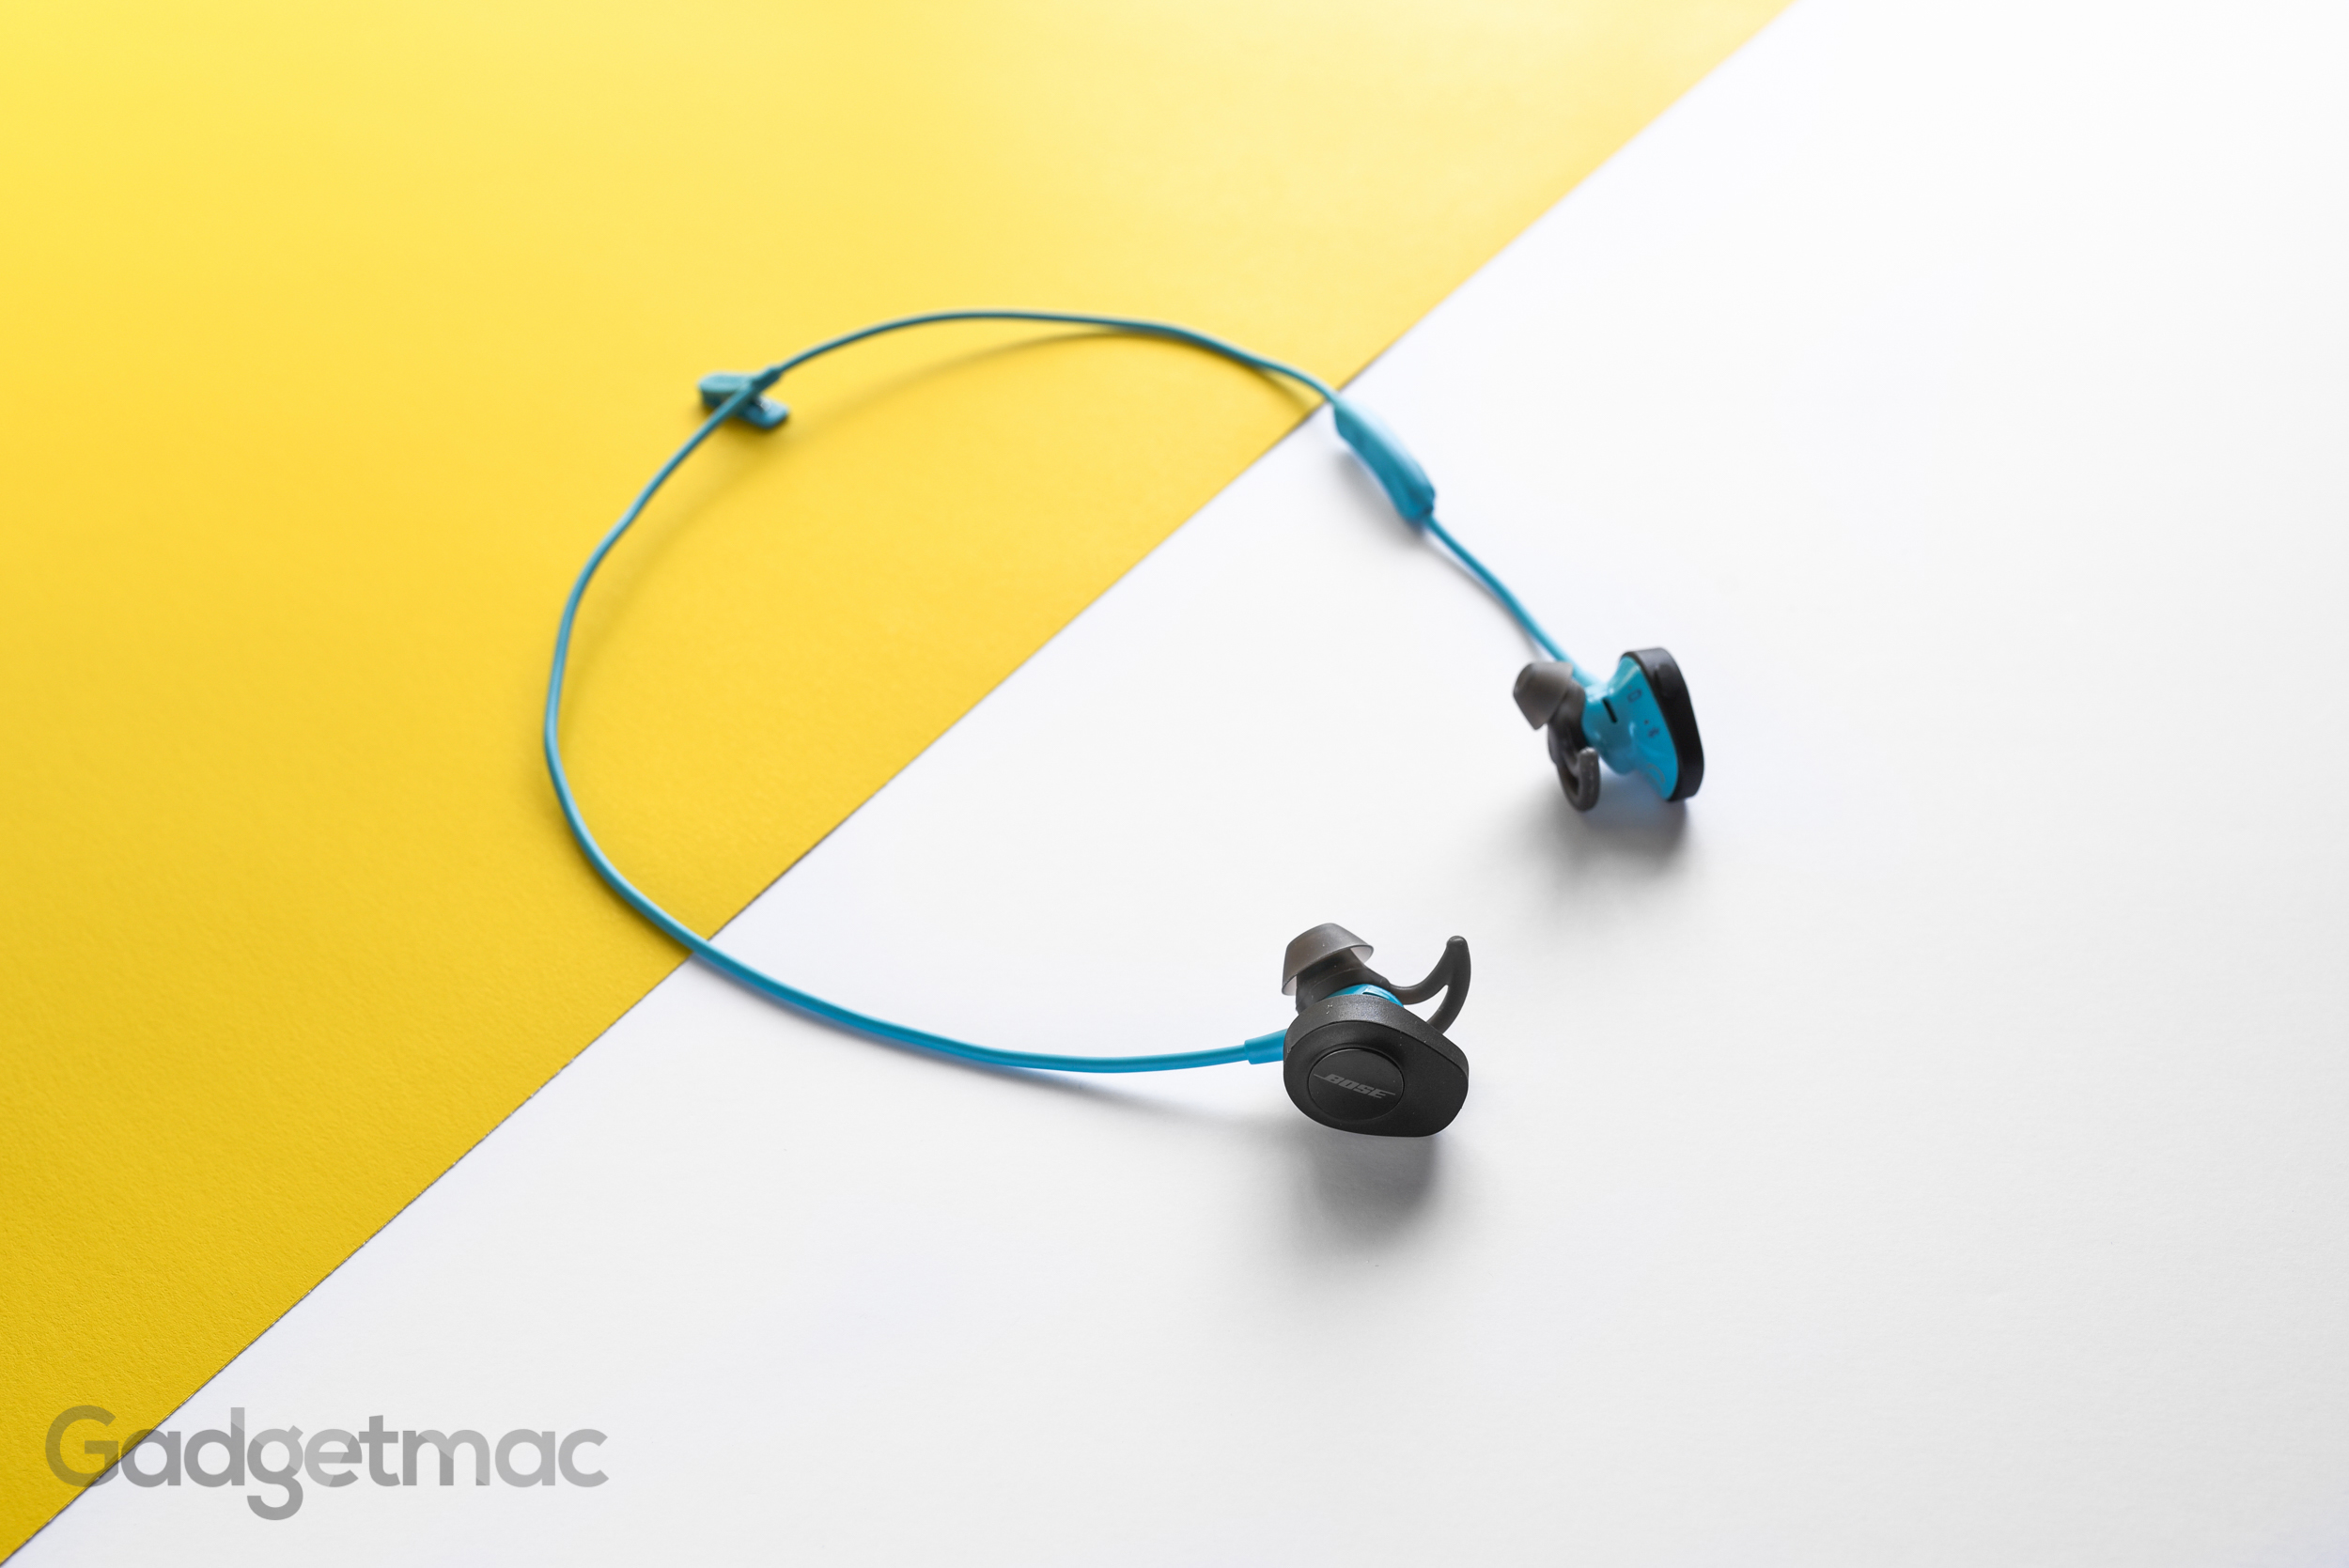 Bose SoundSport Wireless In-Ear Headphones Review — Gadgetmac